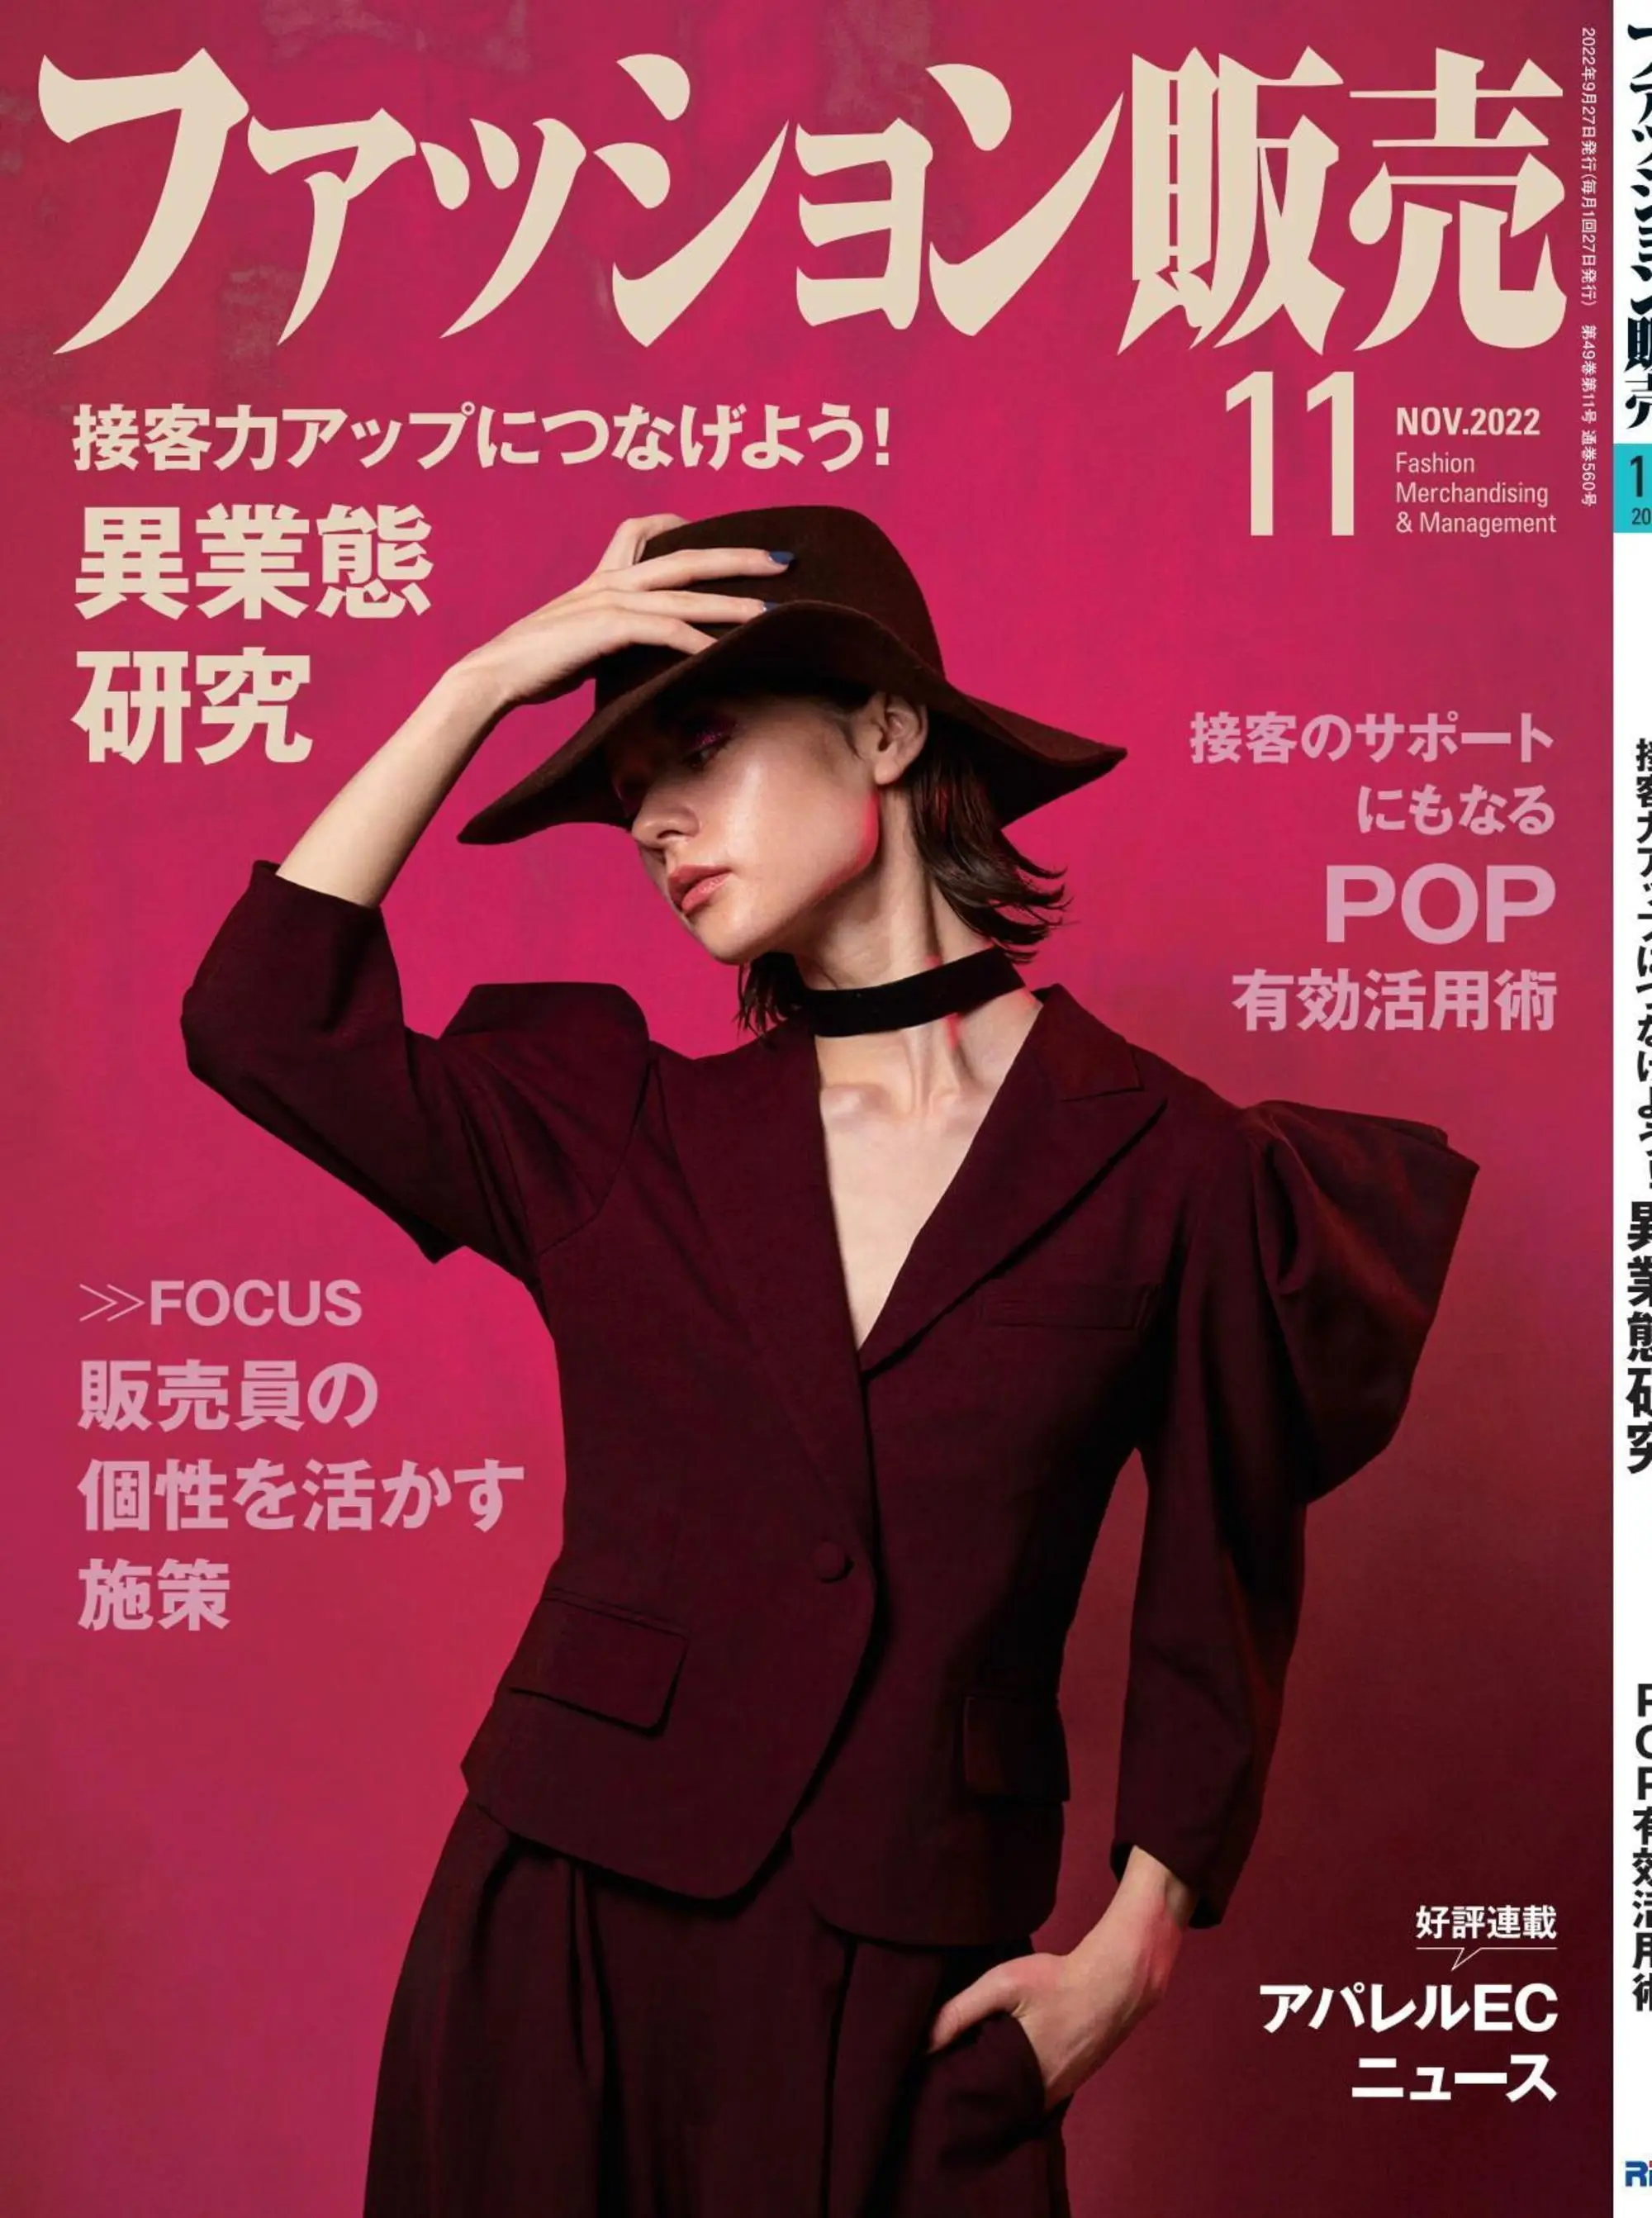 ファッション販売 时装销售商业杂志日文原版 2022年11月